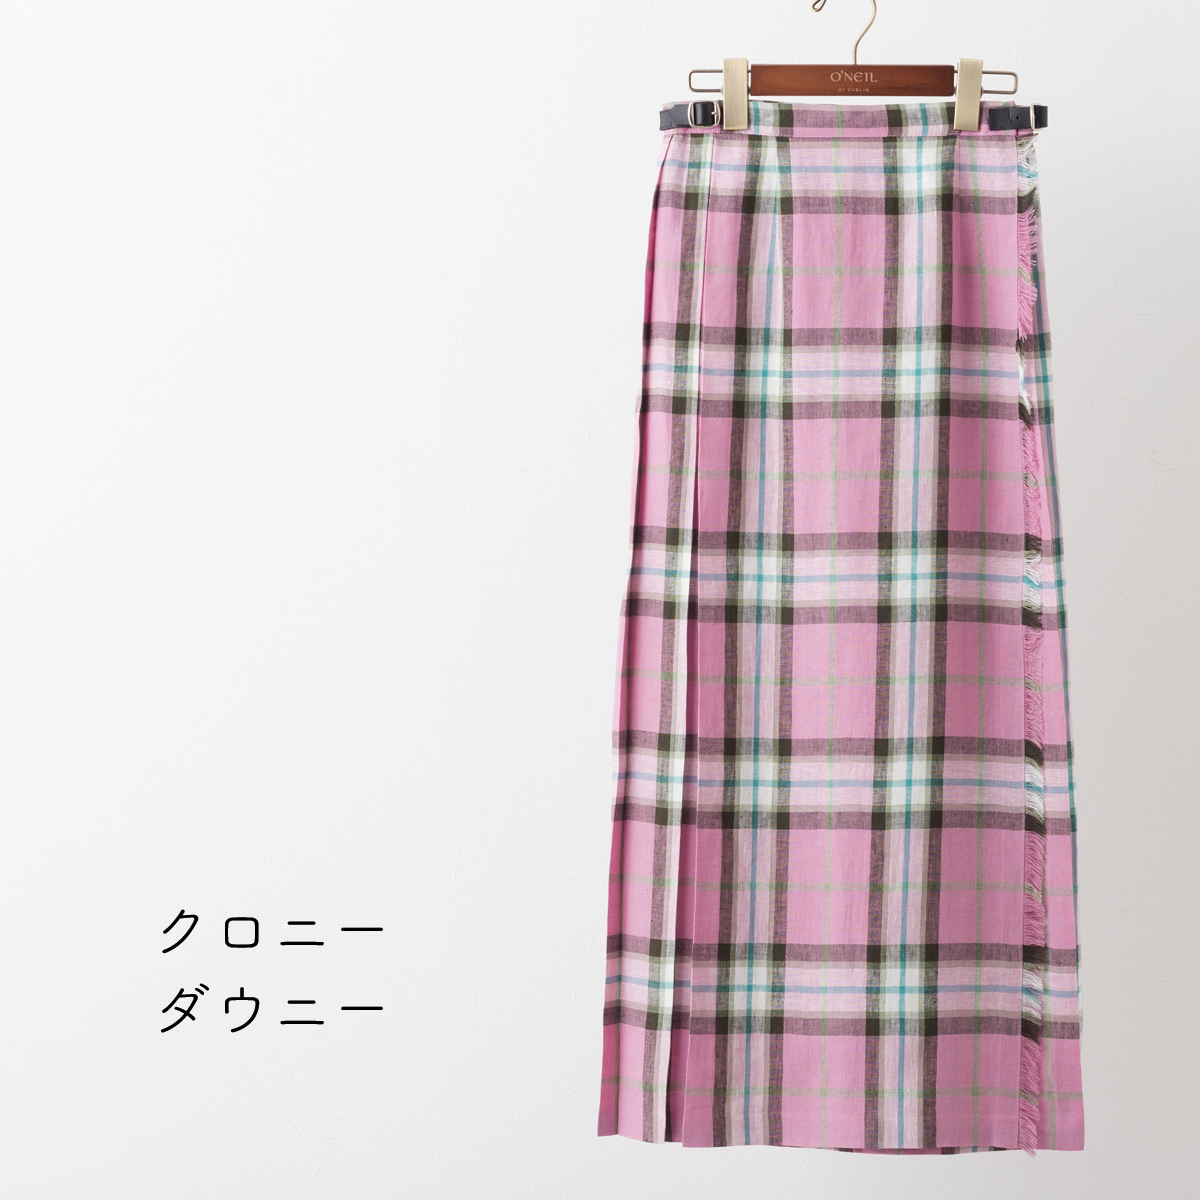 オニールオブダブリン ロングスカート O'NEIL OF DUBLIN リネン100% キルト 90cm 22色 マキシ ロング丈 イージー  巻きスカート アイルランド製 ラップスカート